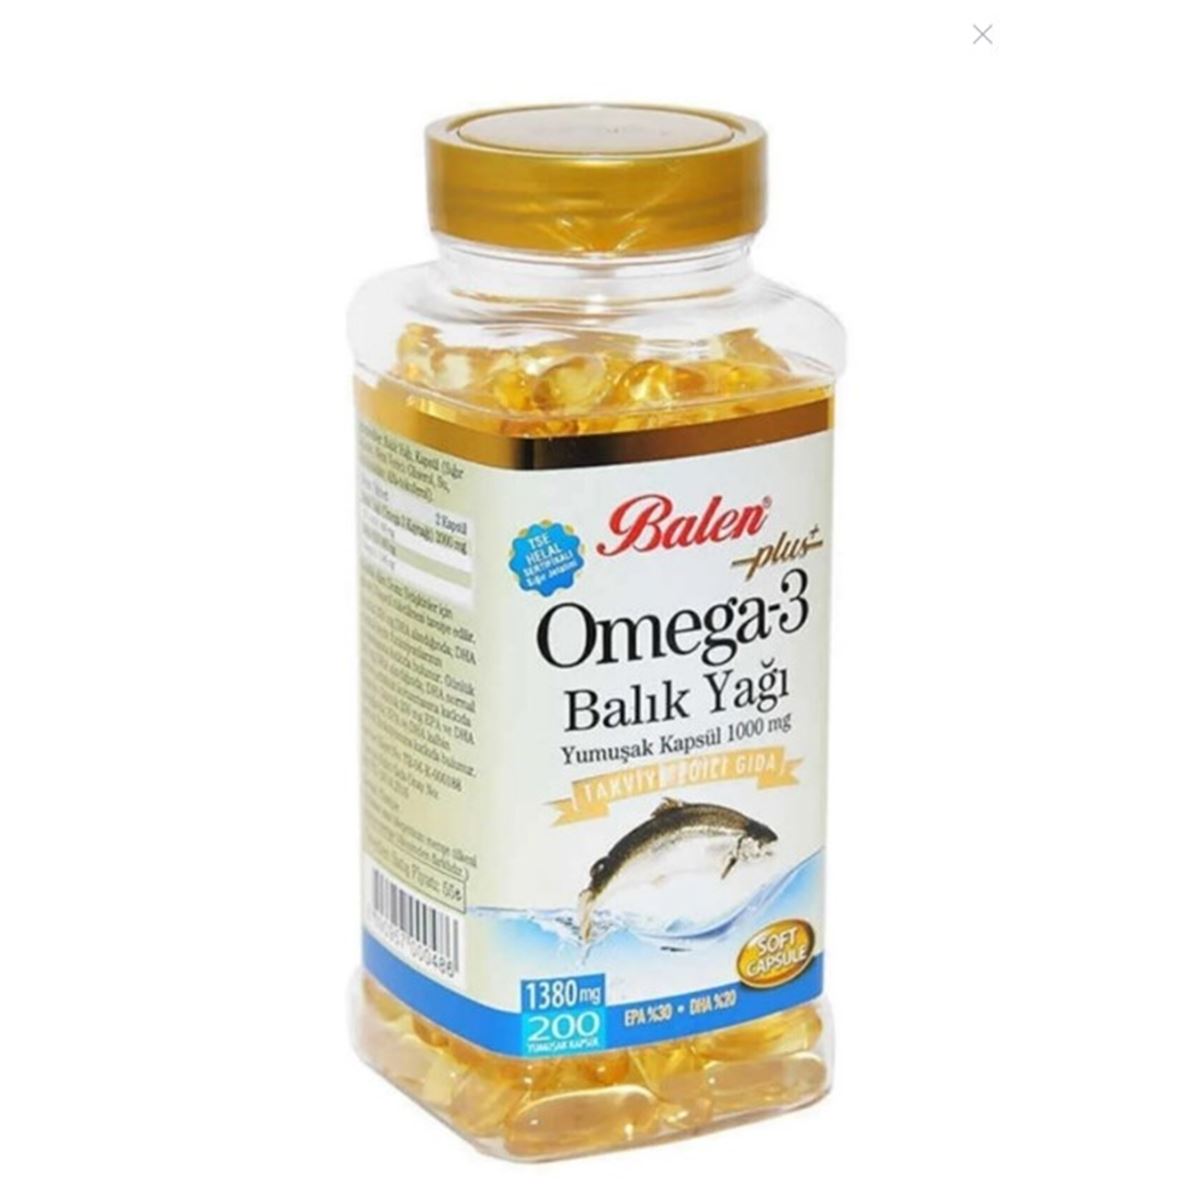 Omega 3 Balık Yağı Yumuşak Kapsül 1000 Mg 200 Kapsül